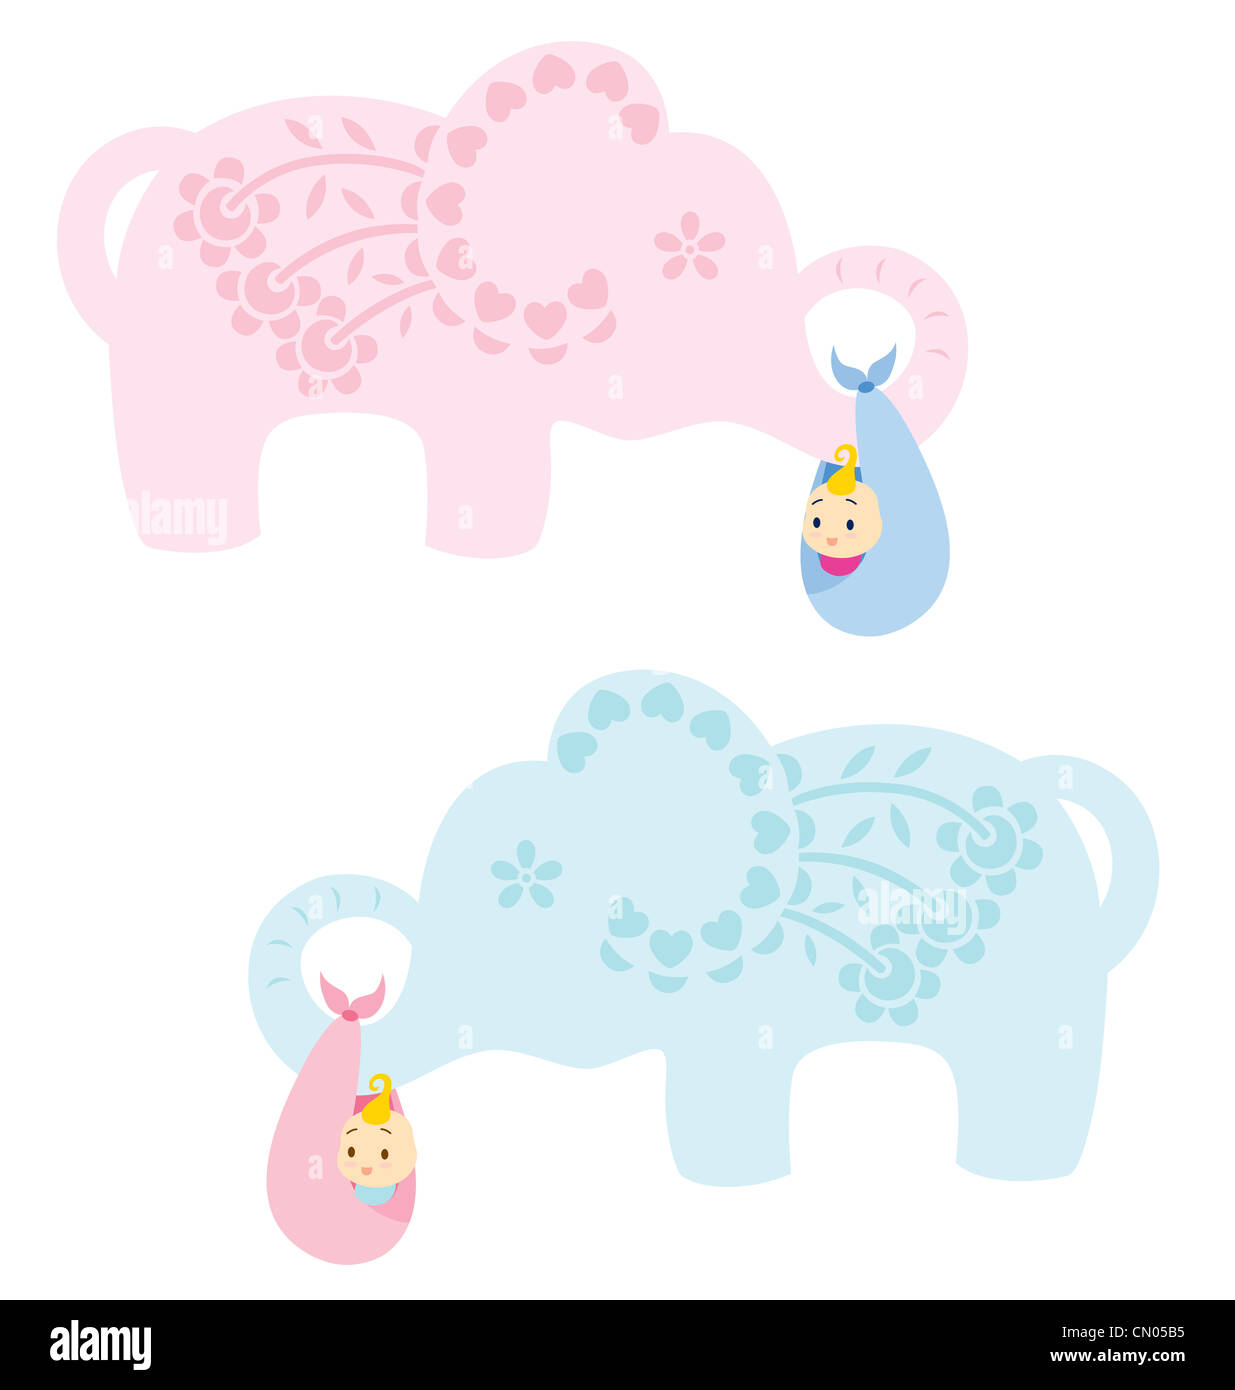 Un éléphant décoré de feuilles et de fleurs portant un bébé nouveau-né, illustré en bleu pour bébé garçon et rose pour bébé fille. Banque D'Images